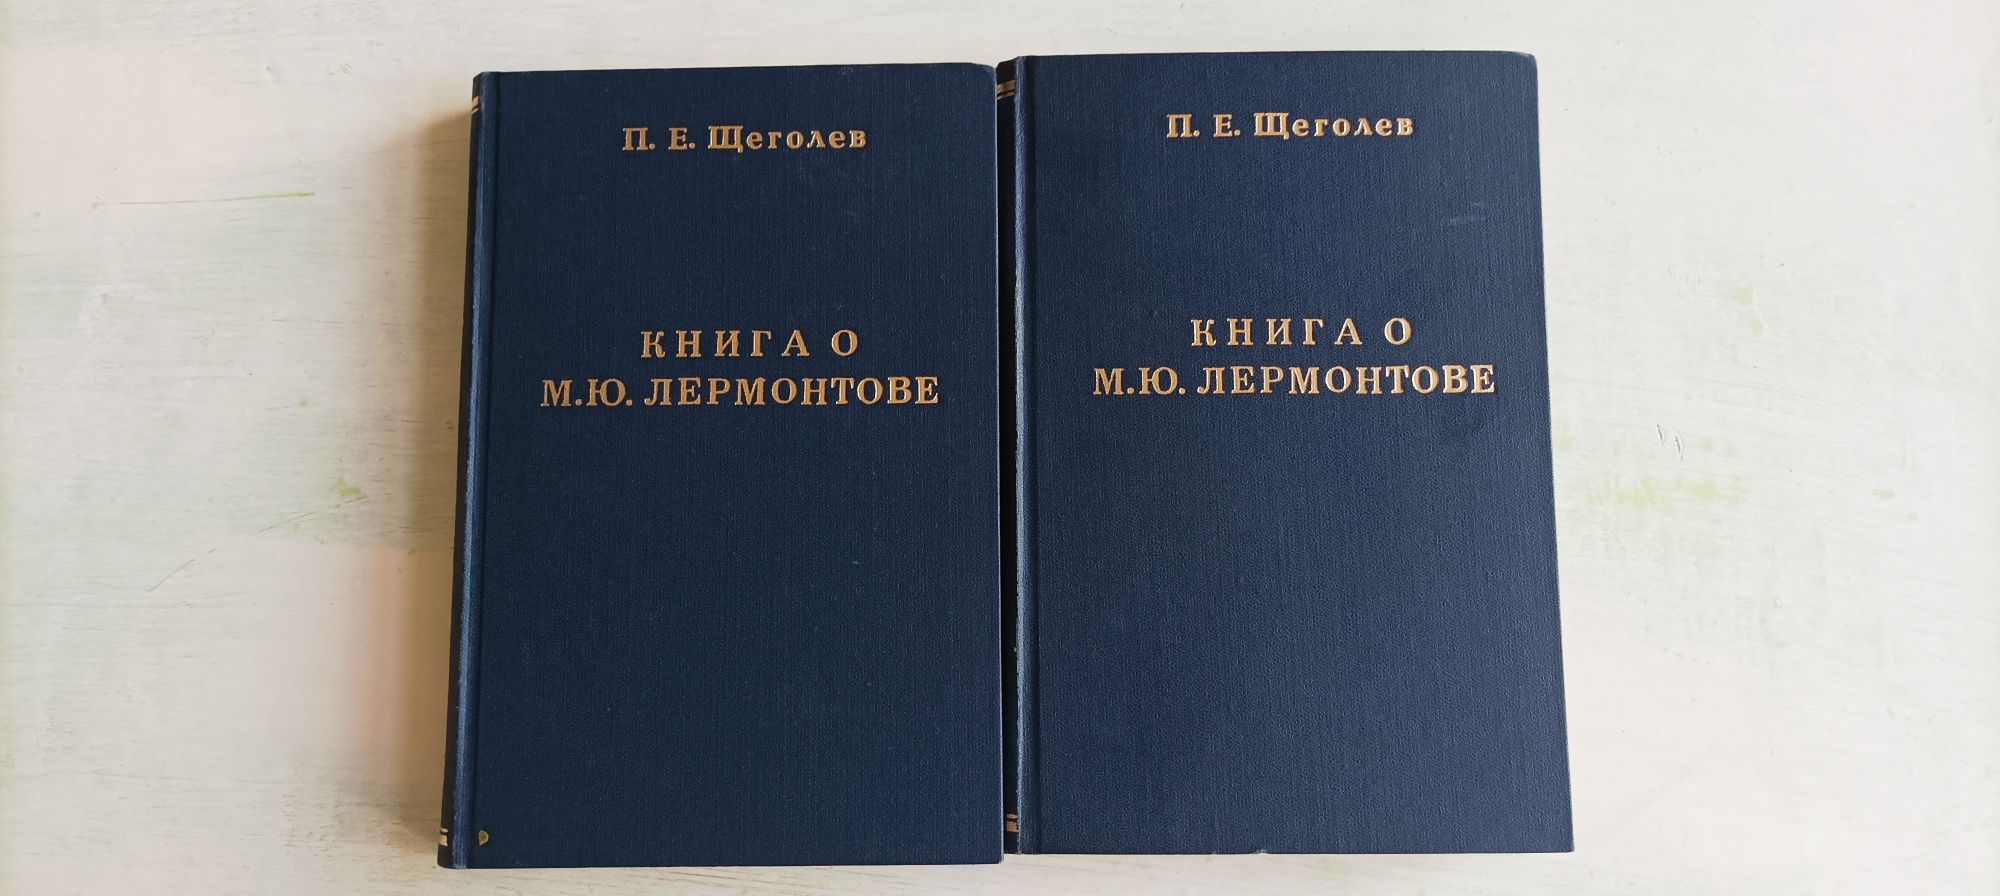 Книга о М. Ю. Лермонтове в 2 томах. 1929 год